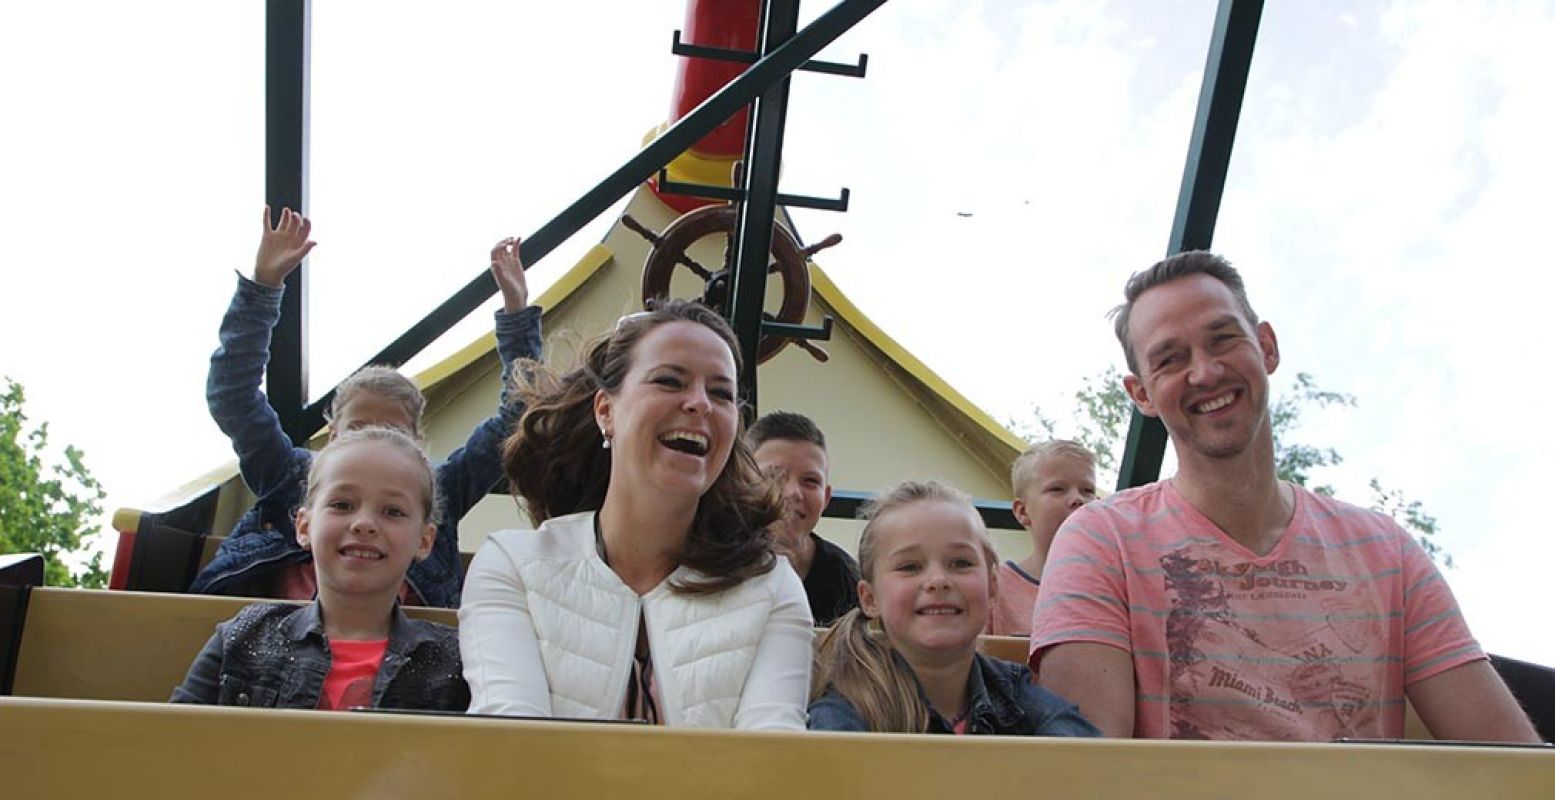 Met z'n allen in de achtbaan was een populaire keuze voor een dagje uit op Hemelvaartsdag. Foto: Attractiepark Drouwenerzand